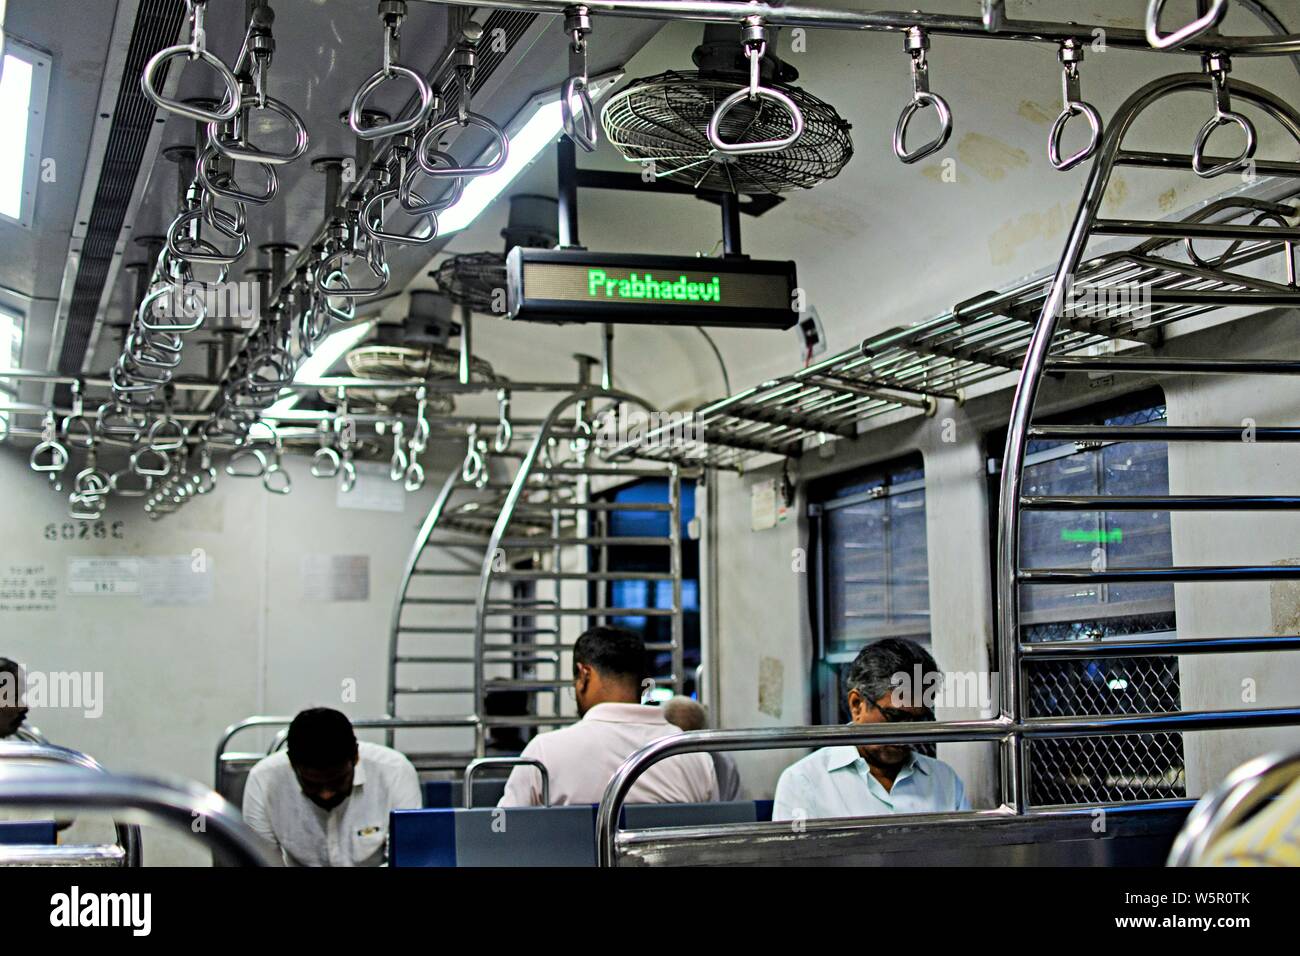 indicator inside train Prabhadevi Railway Station Mumbai Maharashtra India Asia Stock Photo